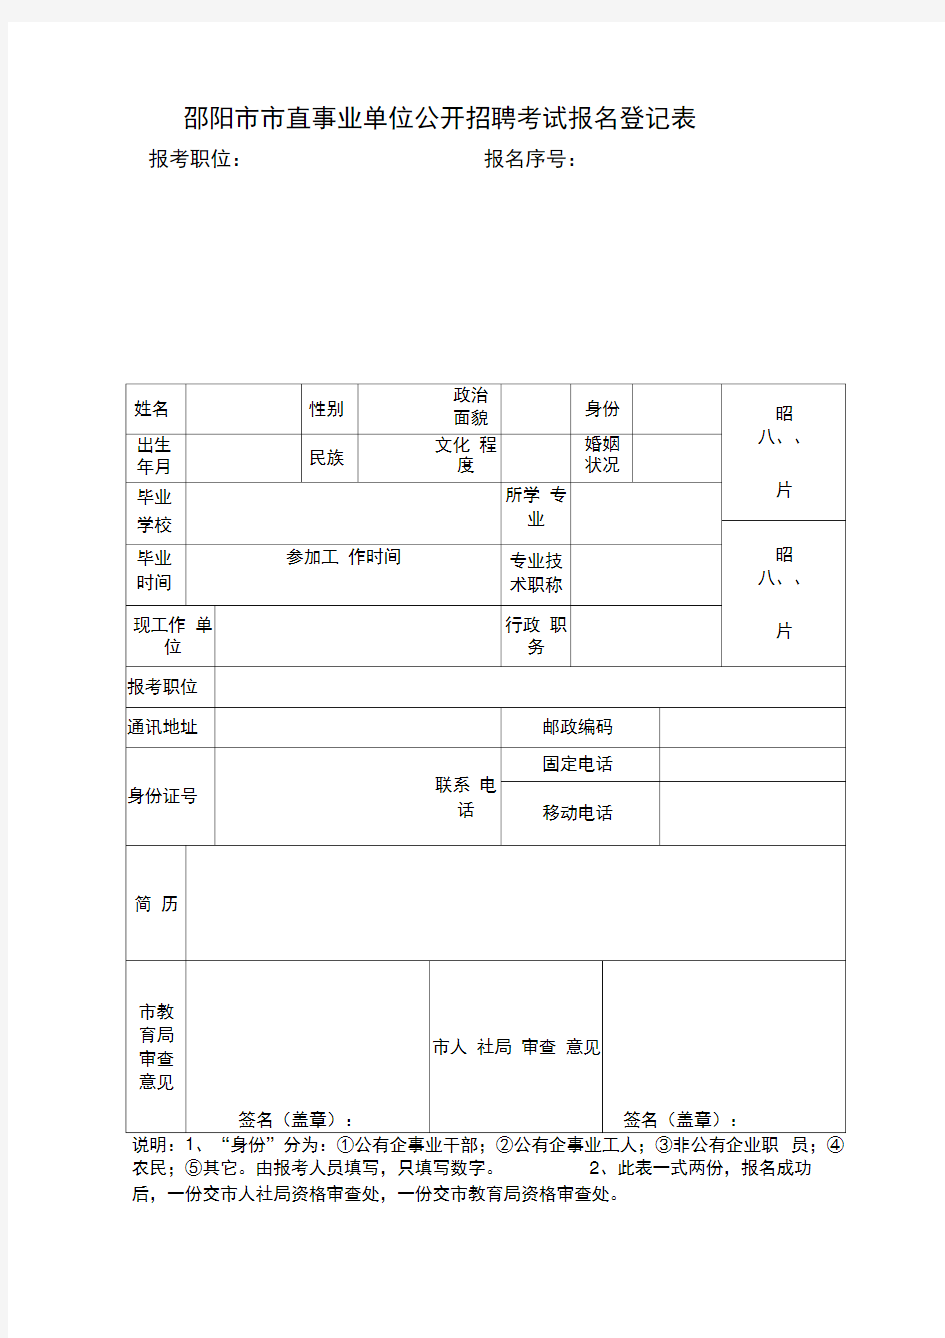 邵阳市市直事业单位公开招聘考试报名登记表